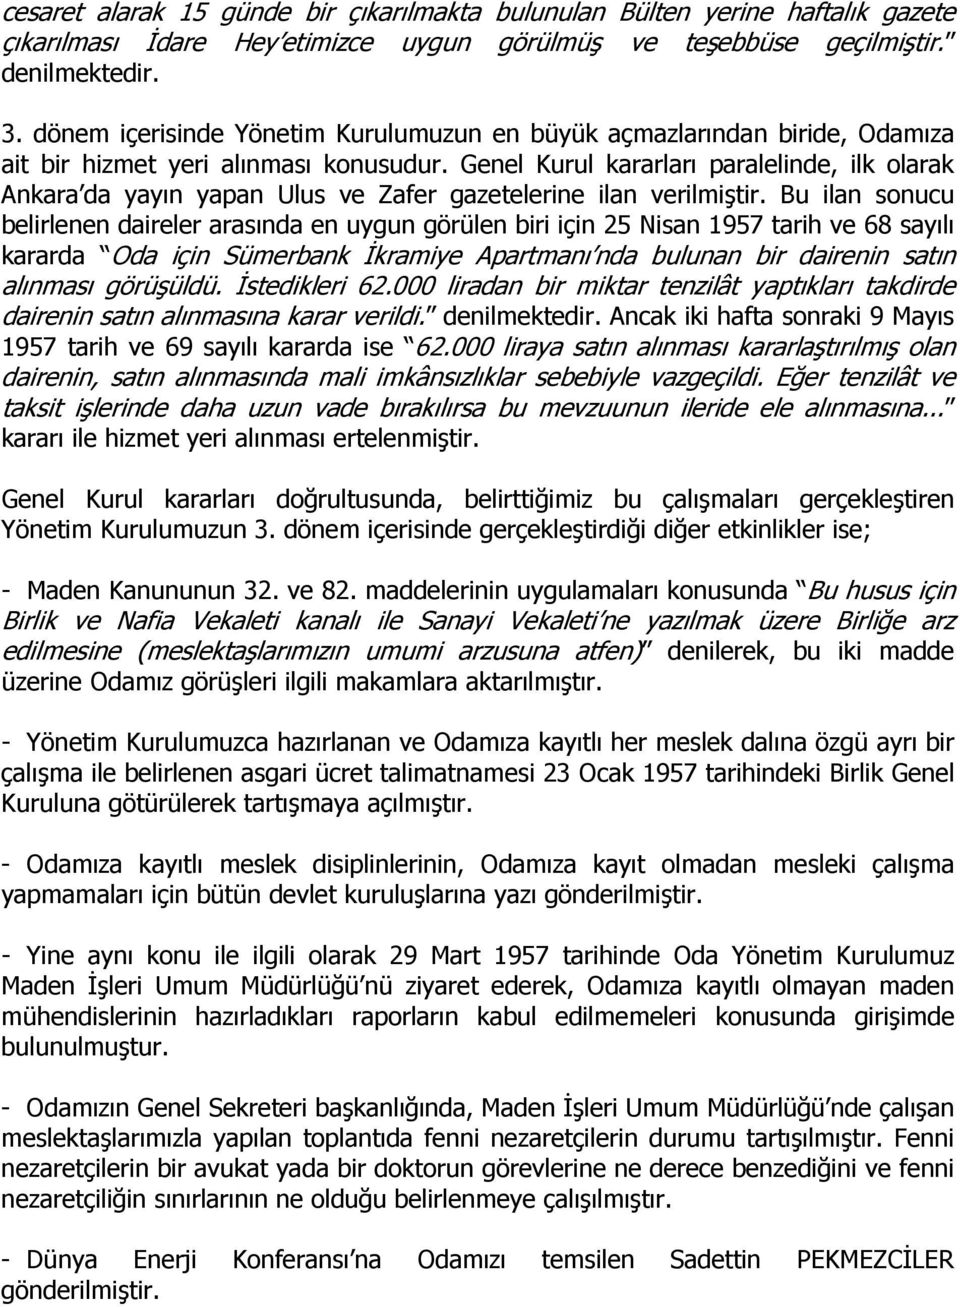 Genel Kurul kararları paralelinde, ilk olarak Ankara da yayın yapan Ulus ve Zafer gazetelerine ilan verilmiştir.